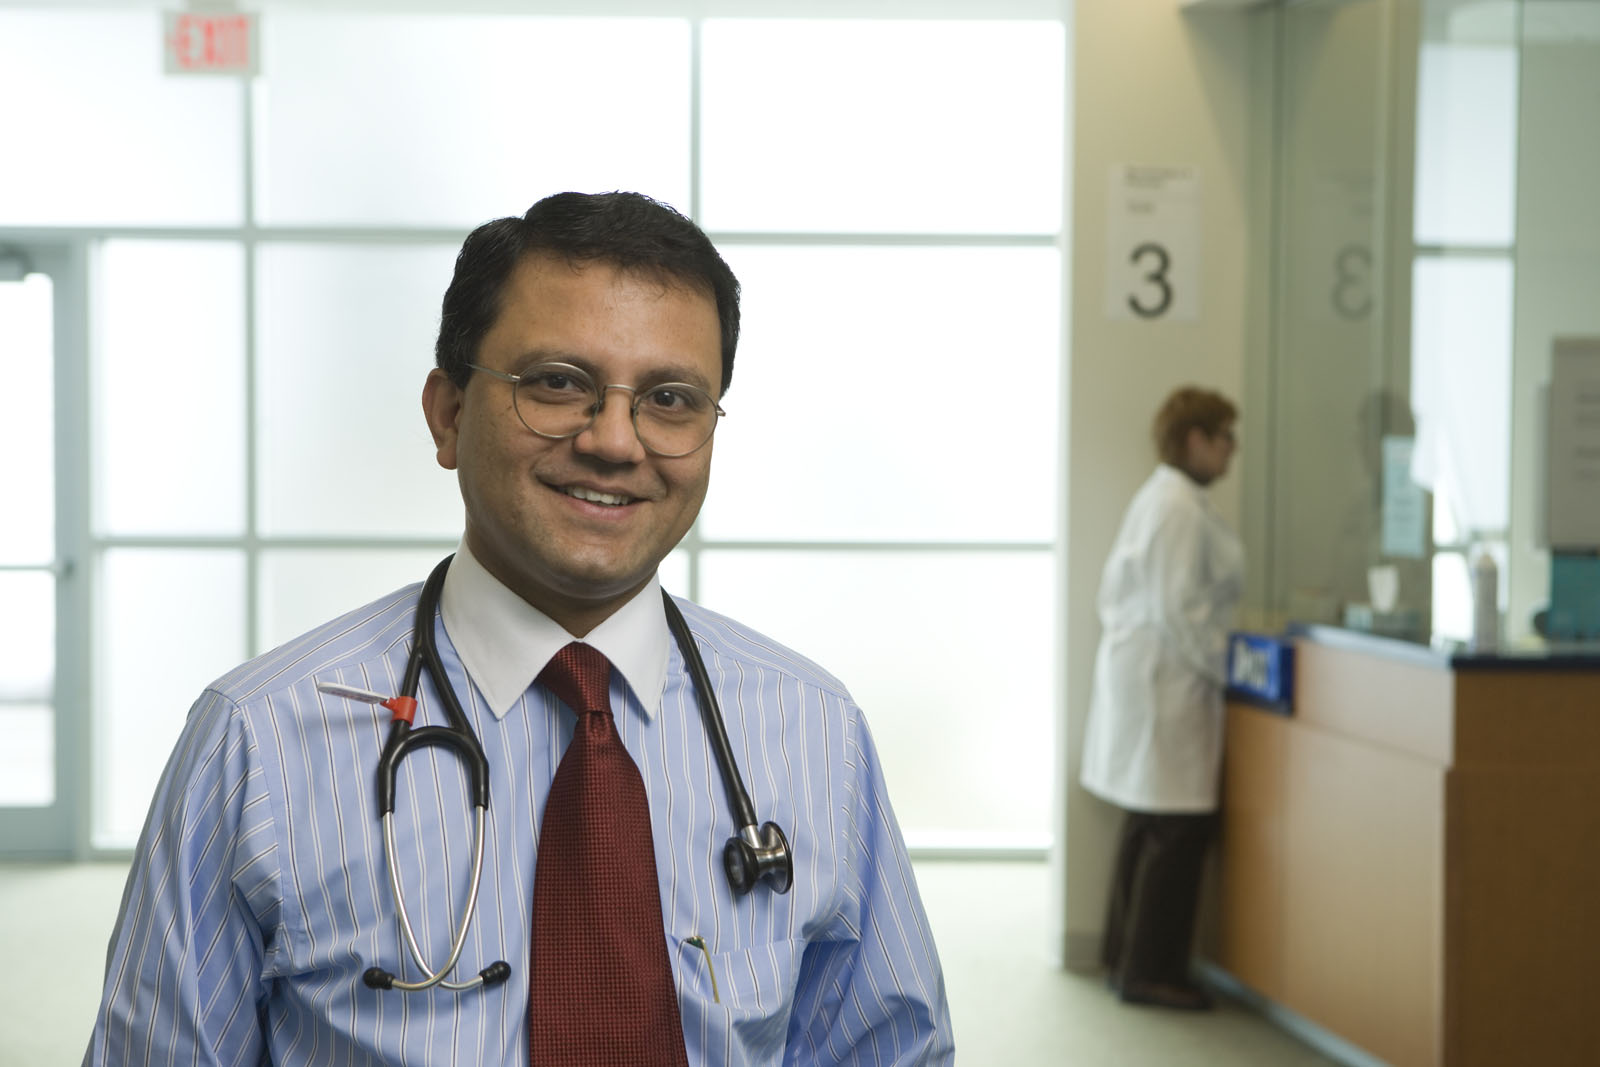 Dr. Santhanam Lakshminarayanan has been named the new Division Chief of Rheumatology at UConn Health. (Photo by Lanny Nagler)